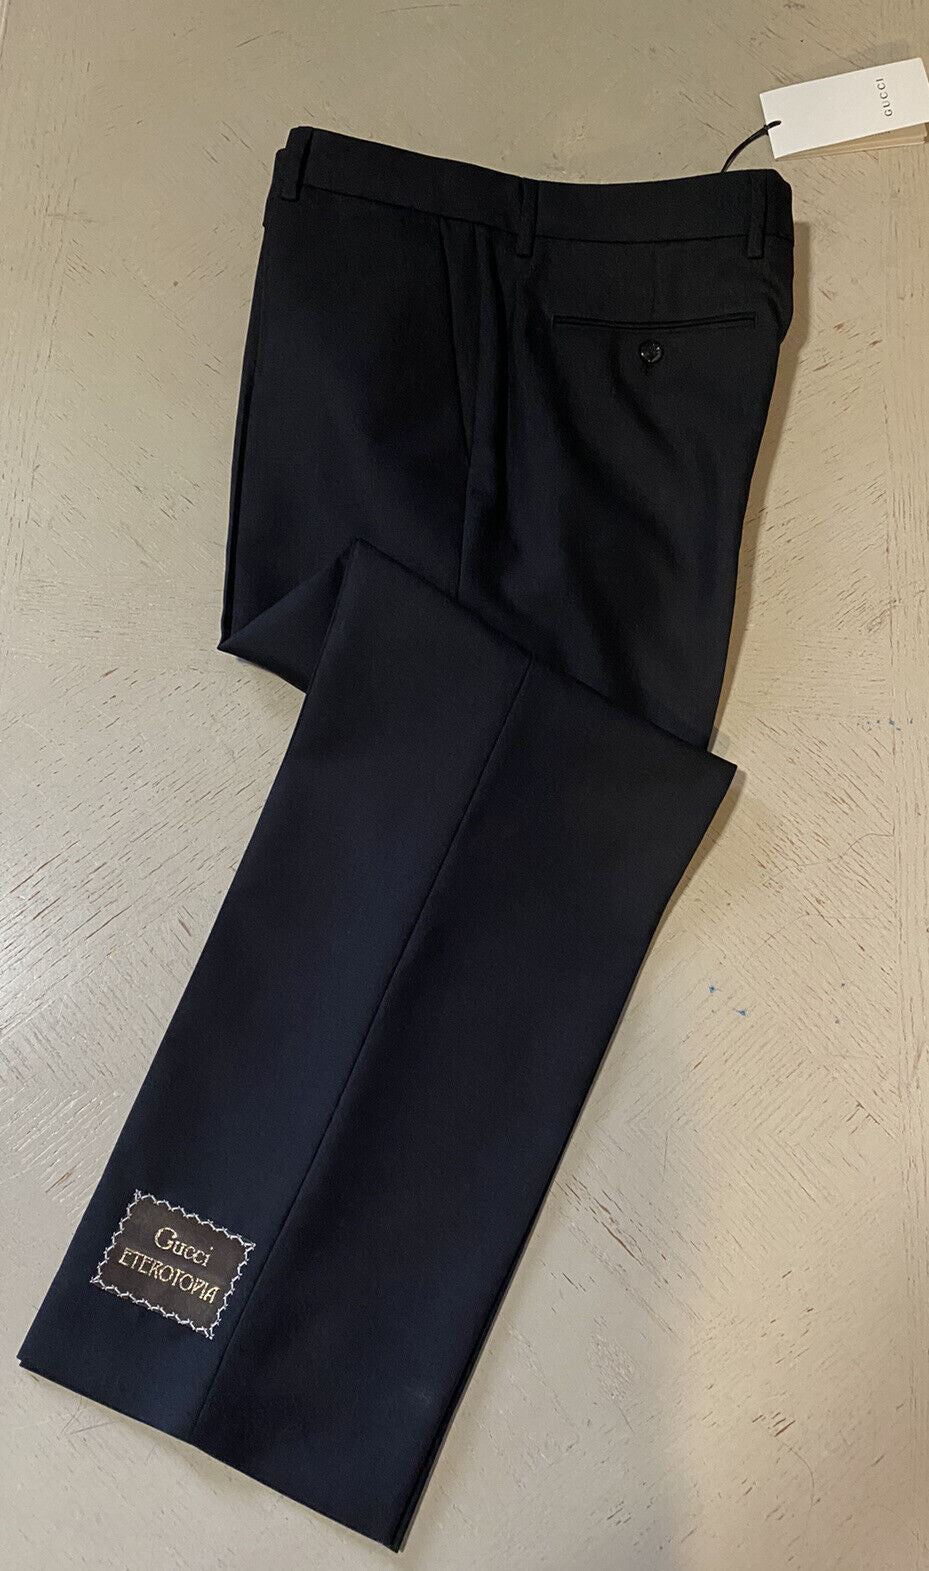 Мужские классические брюки Gucci из шерсти и мохера NWT, черные 38 долларов США (54 евро)